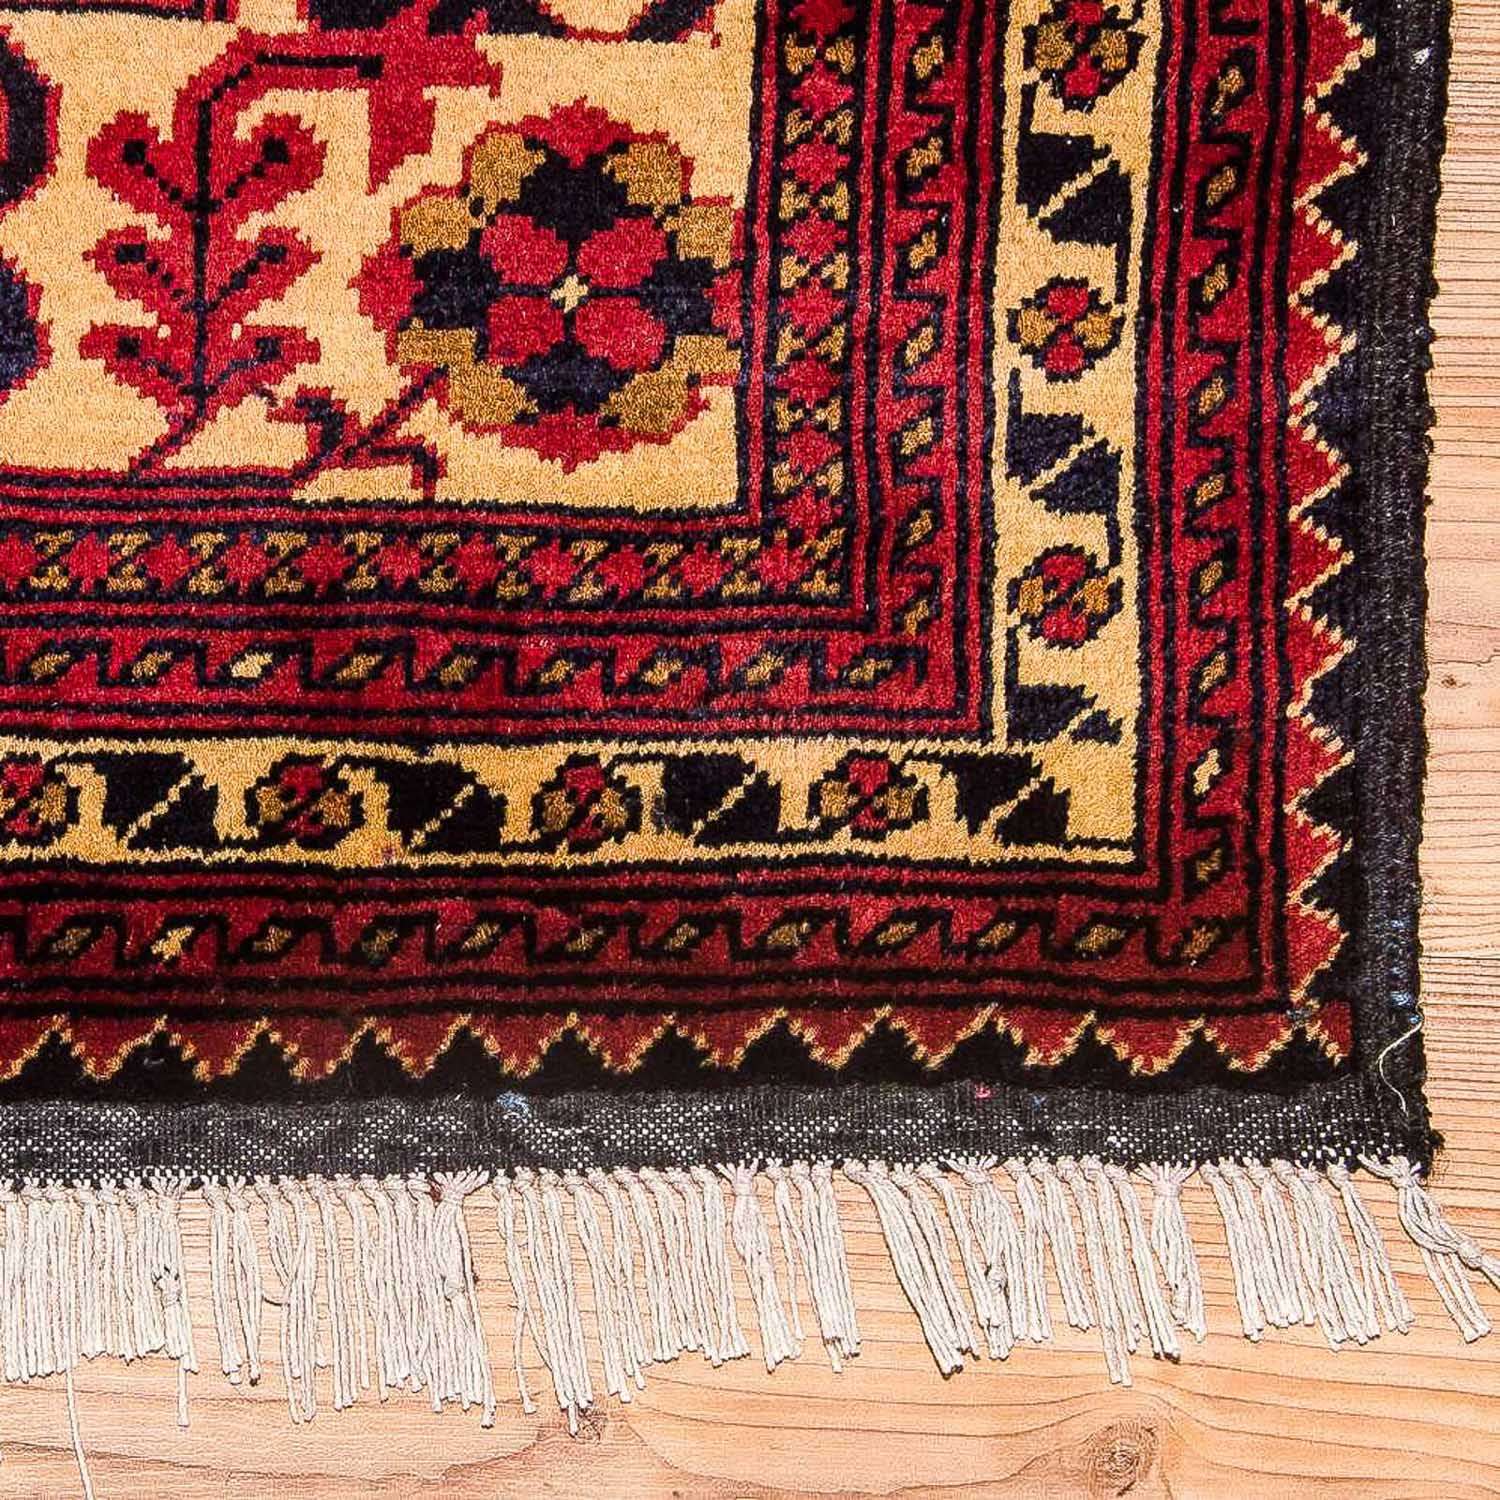 Afghaans tapijt - Hatshlu - 290 x 202 cm - geel